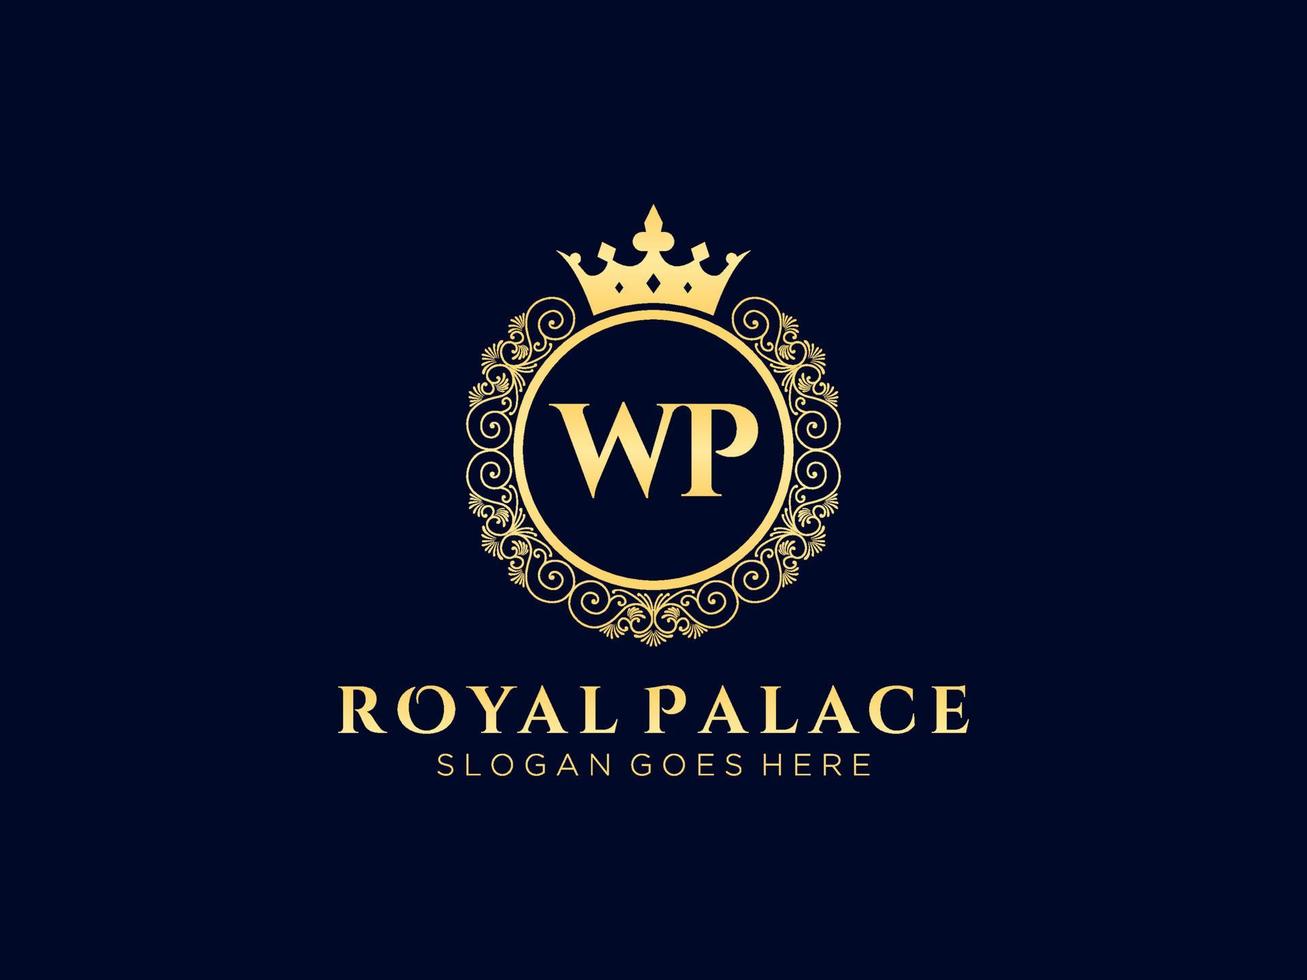 letra wp logotipo victoriano de lujo real antiguo con marco ornamental. vector